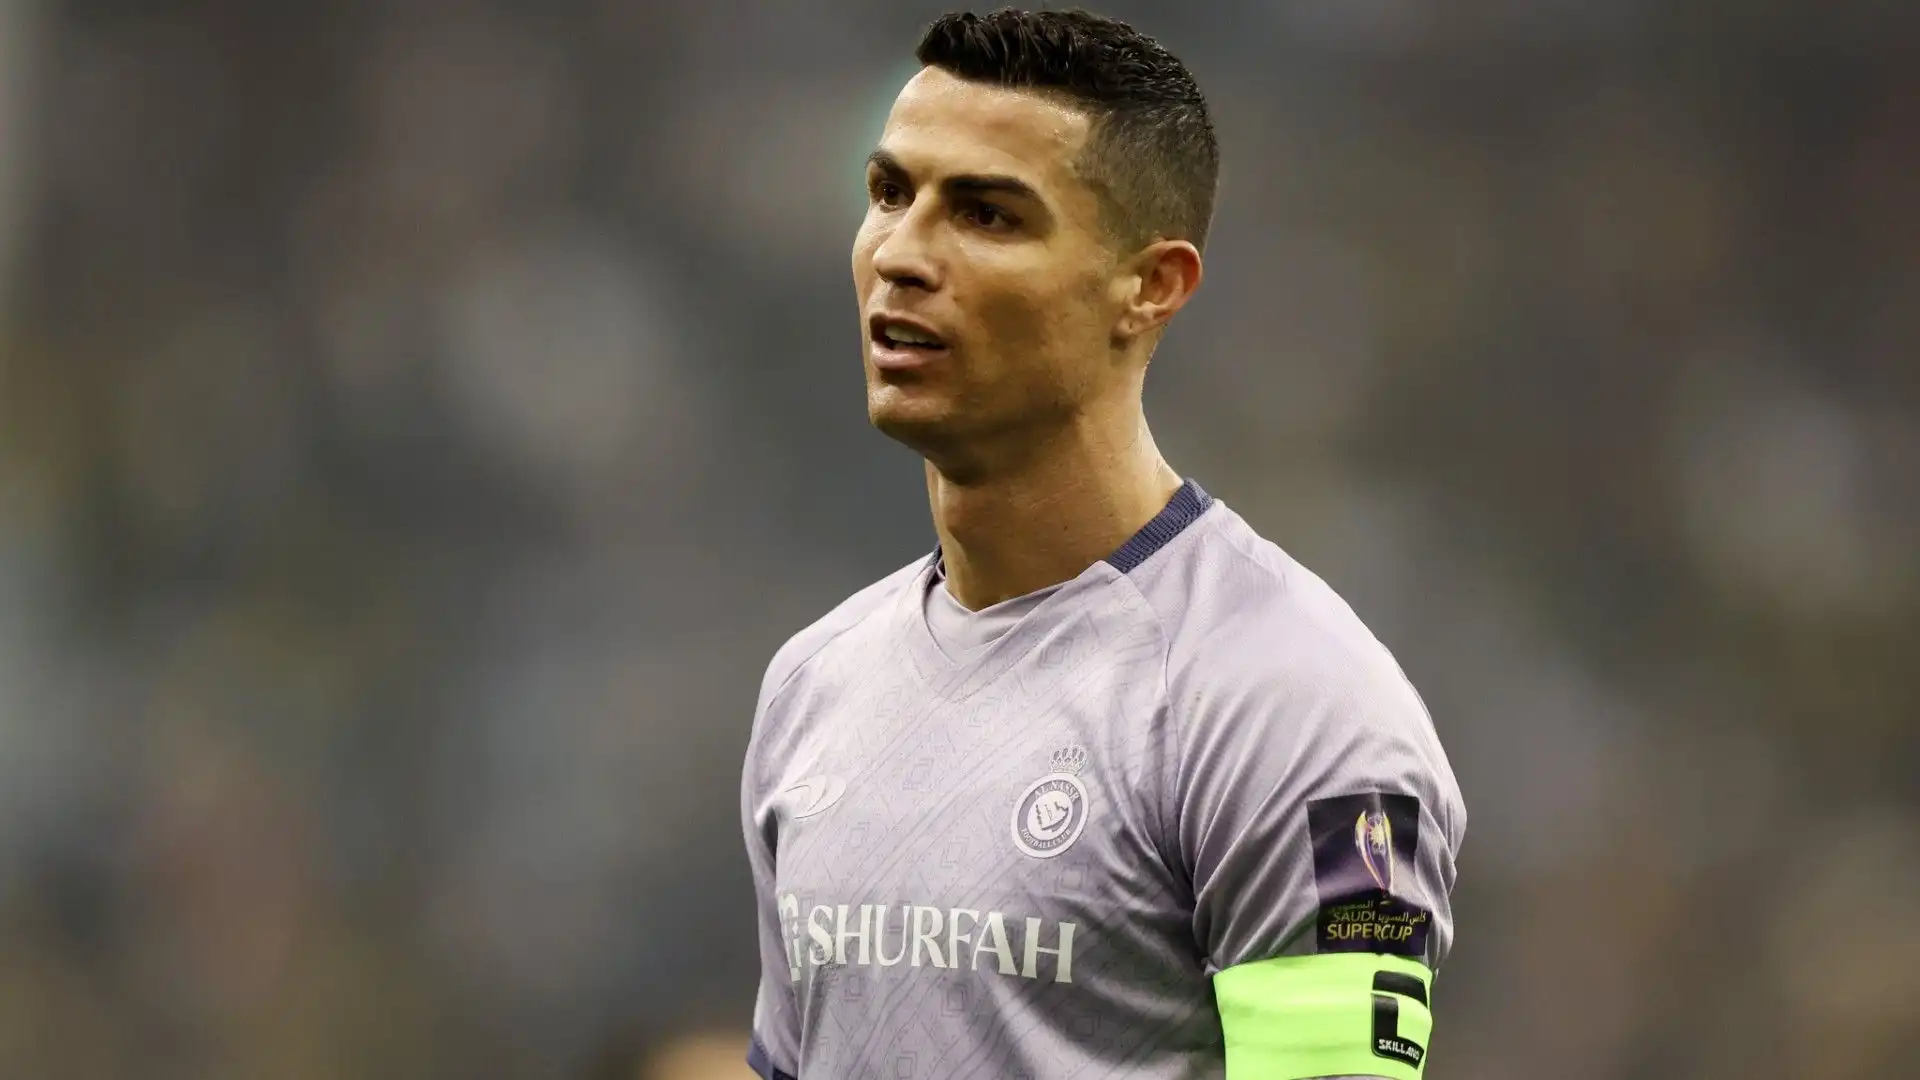 Secondo AlArabiya, il figlio di Cristiano Ronaldo vestirà la maglia numero 7 come il papà